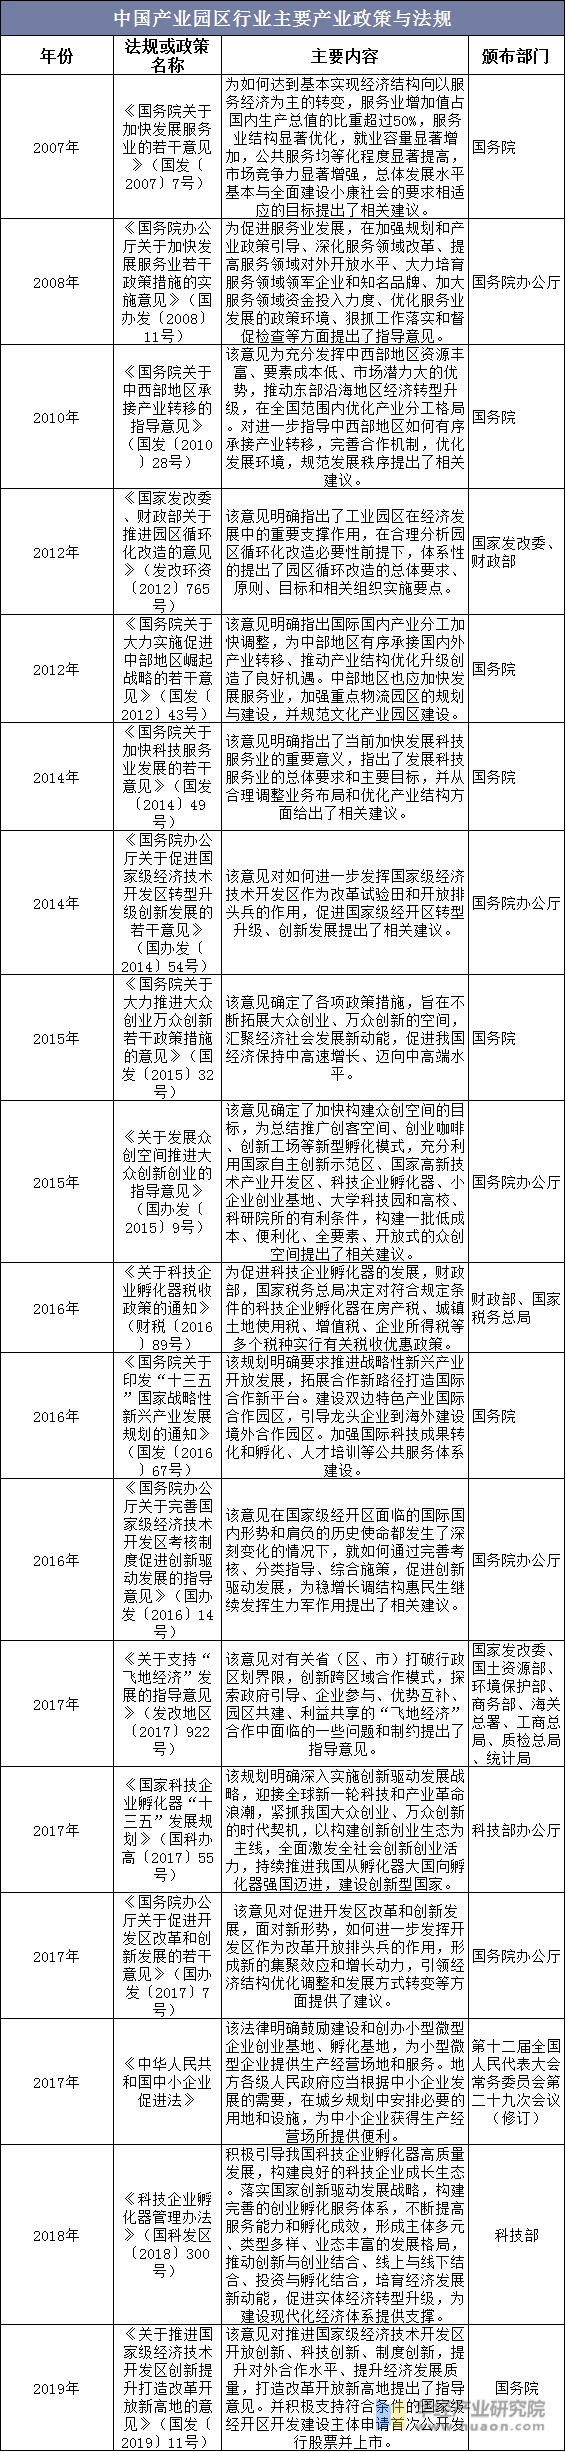 中国产业园区行业主要产业政策与法规